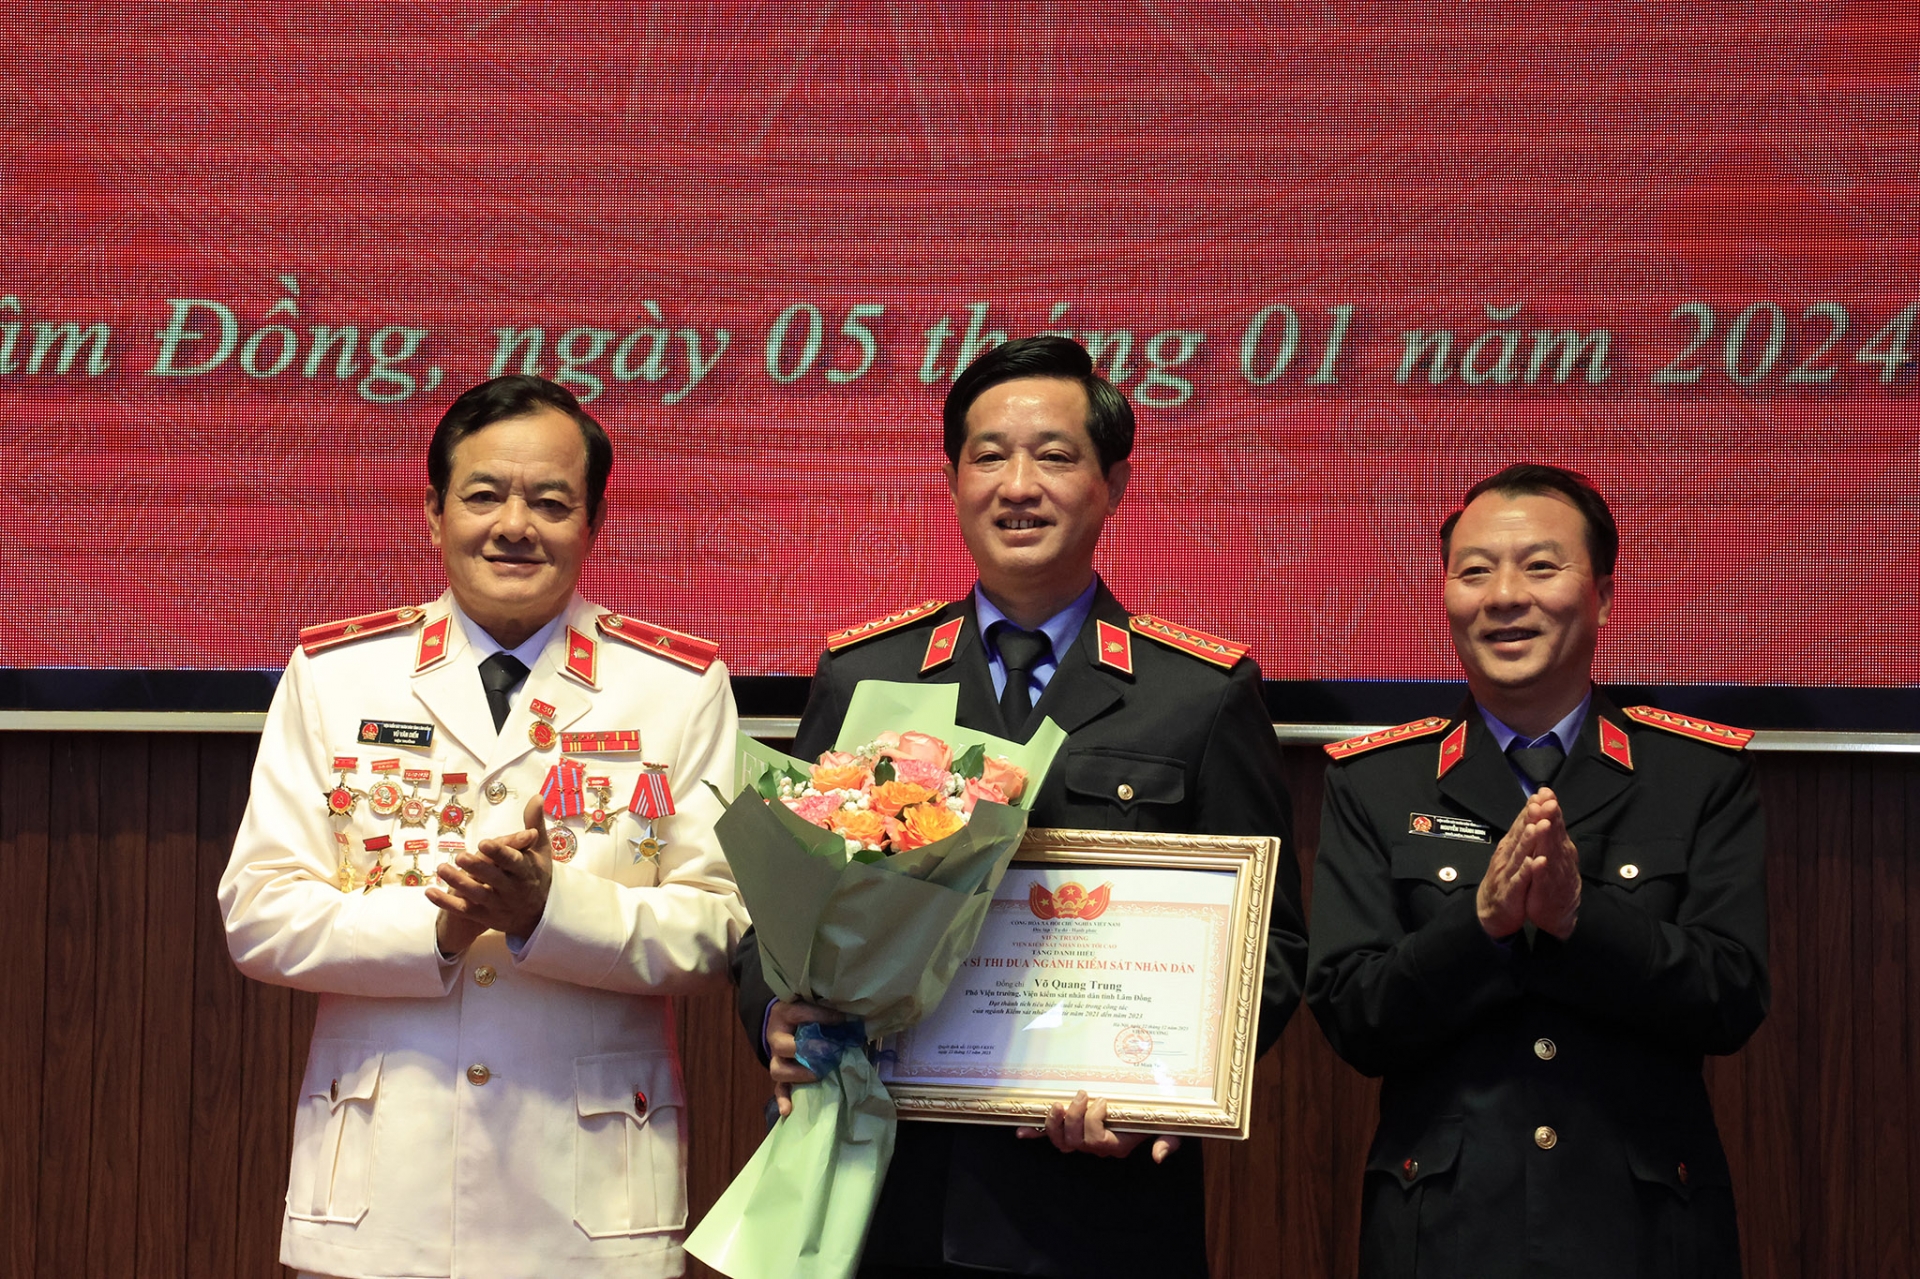 Trao danh hiệu Chiến sỹ thi đua ngành Kiểm sát của VKSND tối cao cho đồng chí Võ Quang Trung - Phó viện trưởng VKSND tỉnh Lâm Đồng